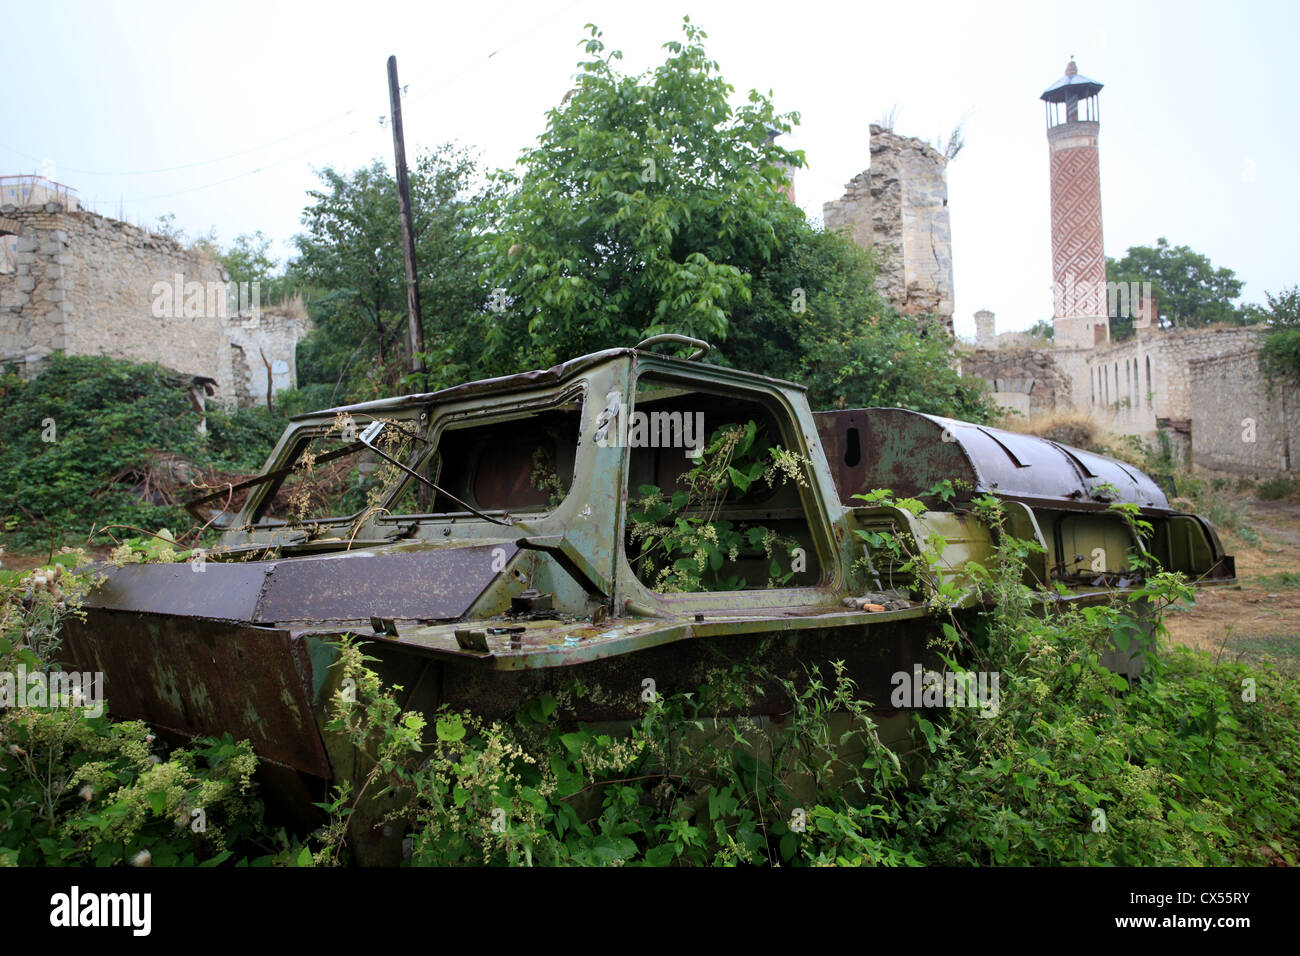 Destroyed military vehicle, Shushi, Nagorno-Karabakh Stock Photo